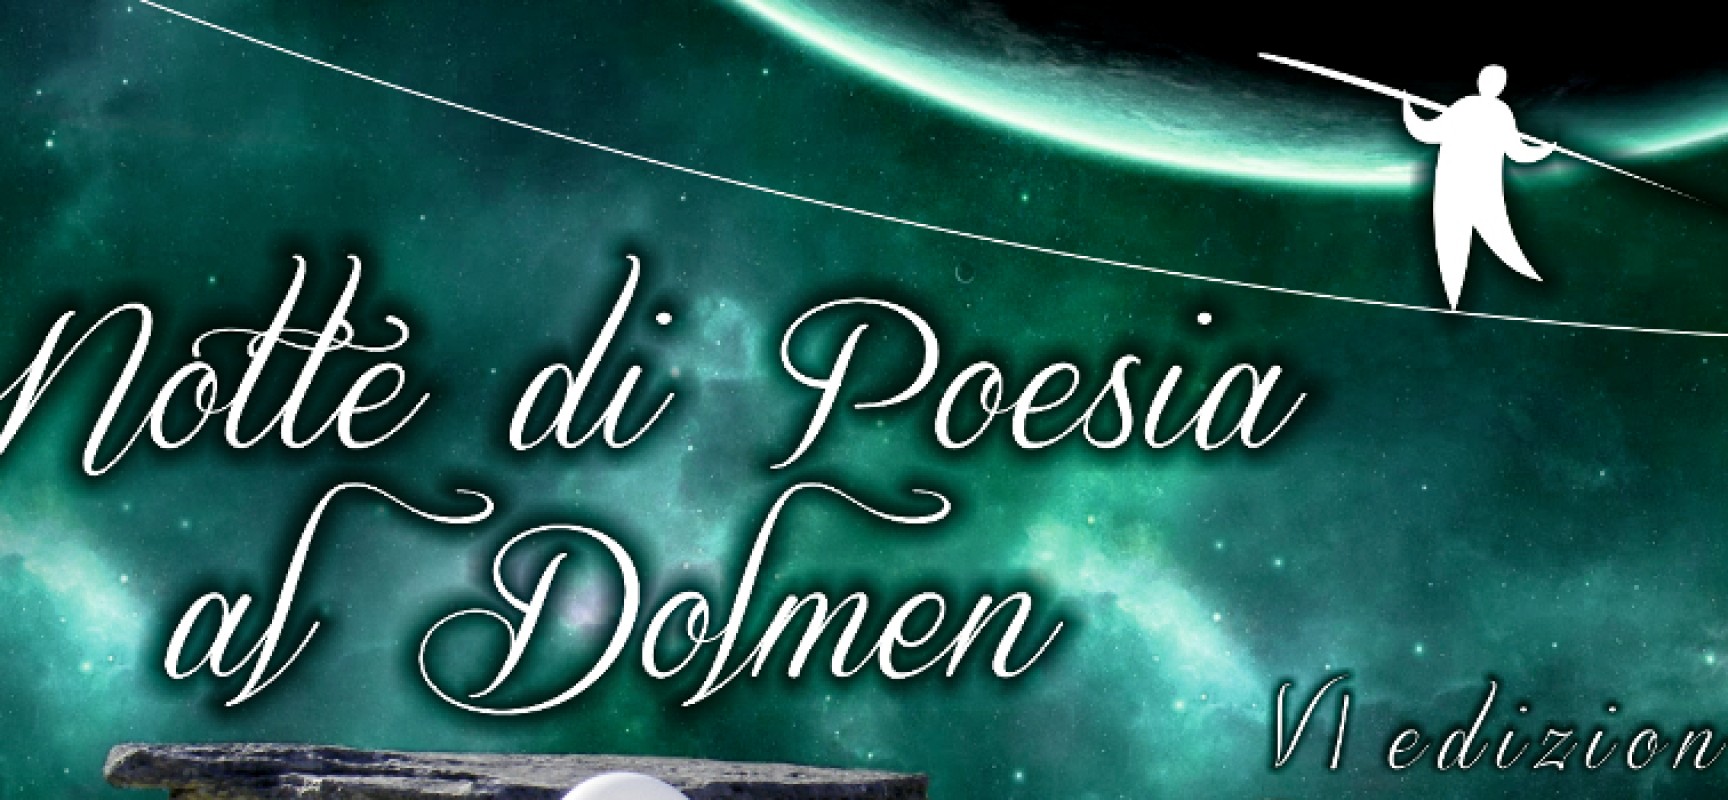 “Notte di Poesia al Dolmen”, VI edizione fra tradizione e interessanti novità /  DETTAGLI